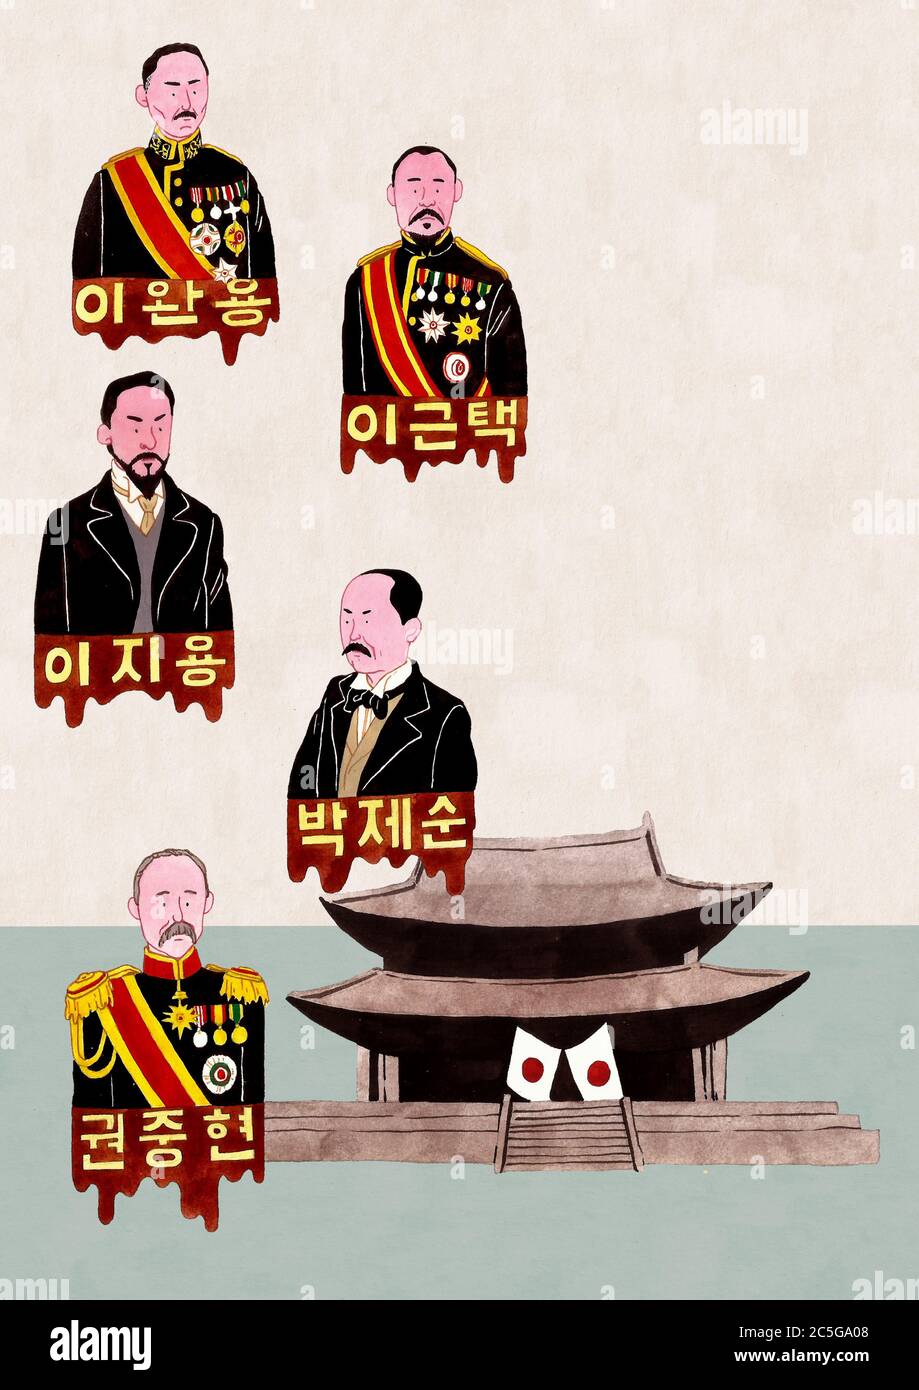 Handgezeichnete große Menschen und historische Ereignisse in Korea 007 Stock Vektor